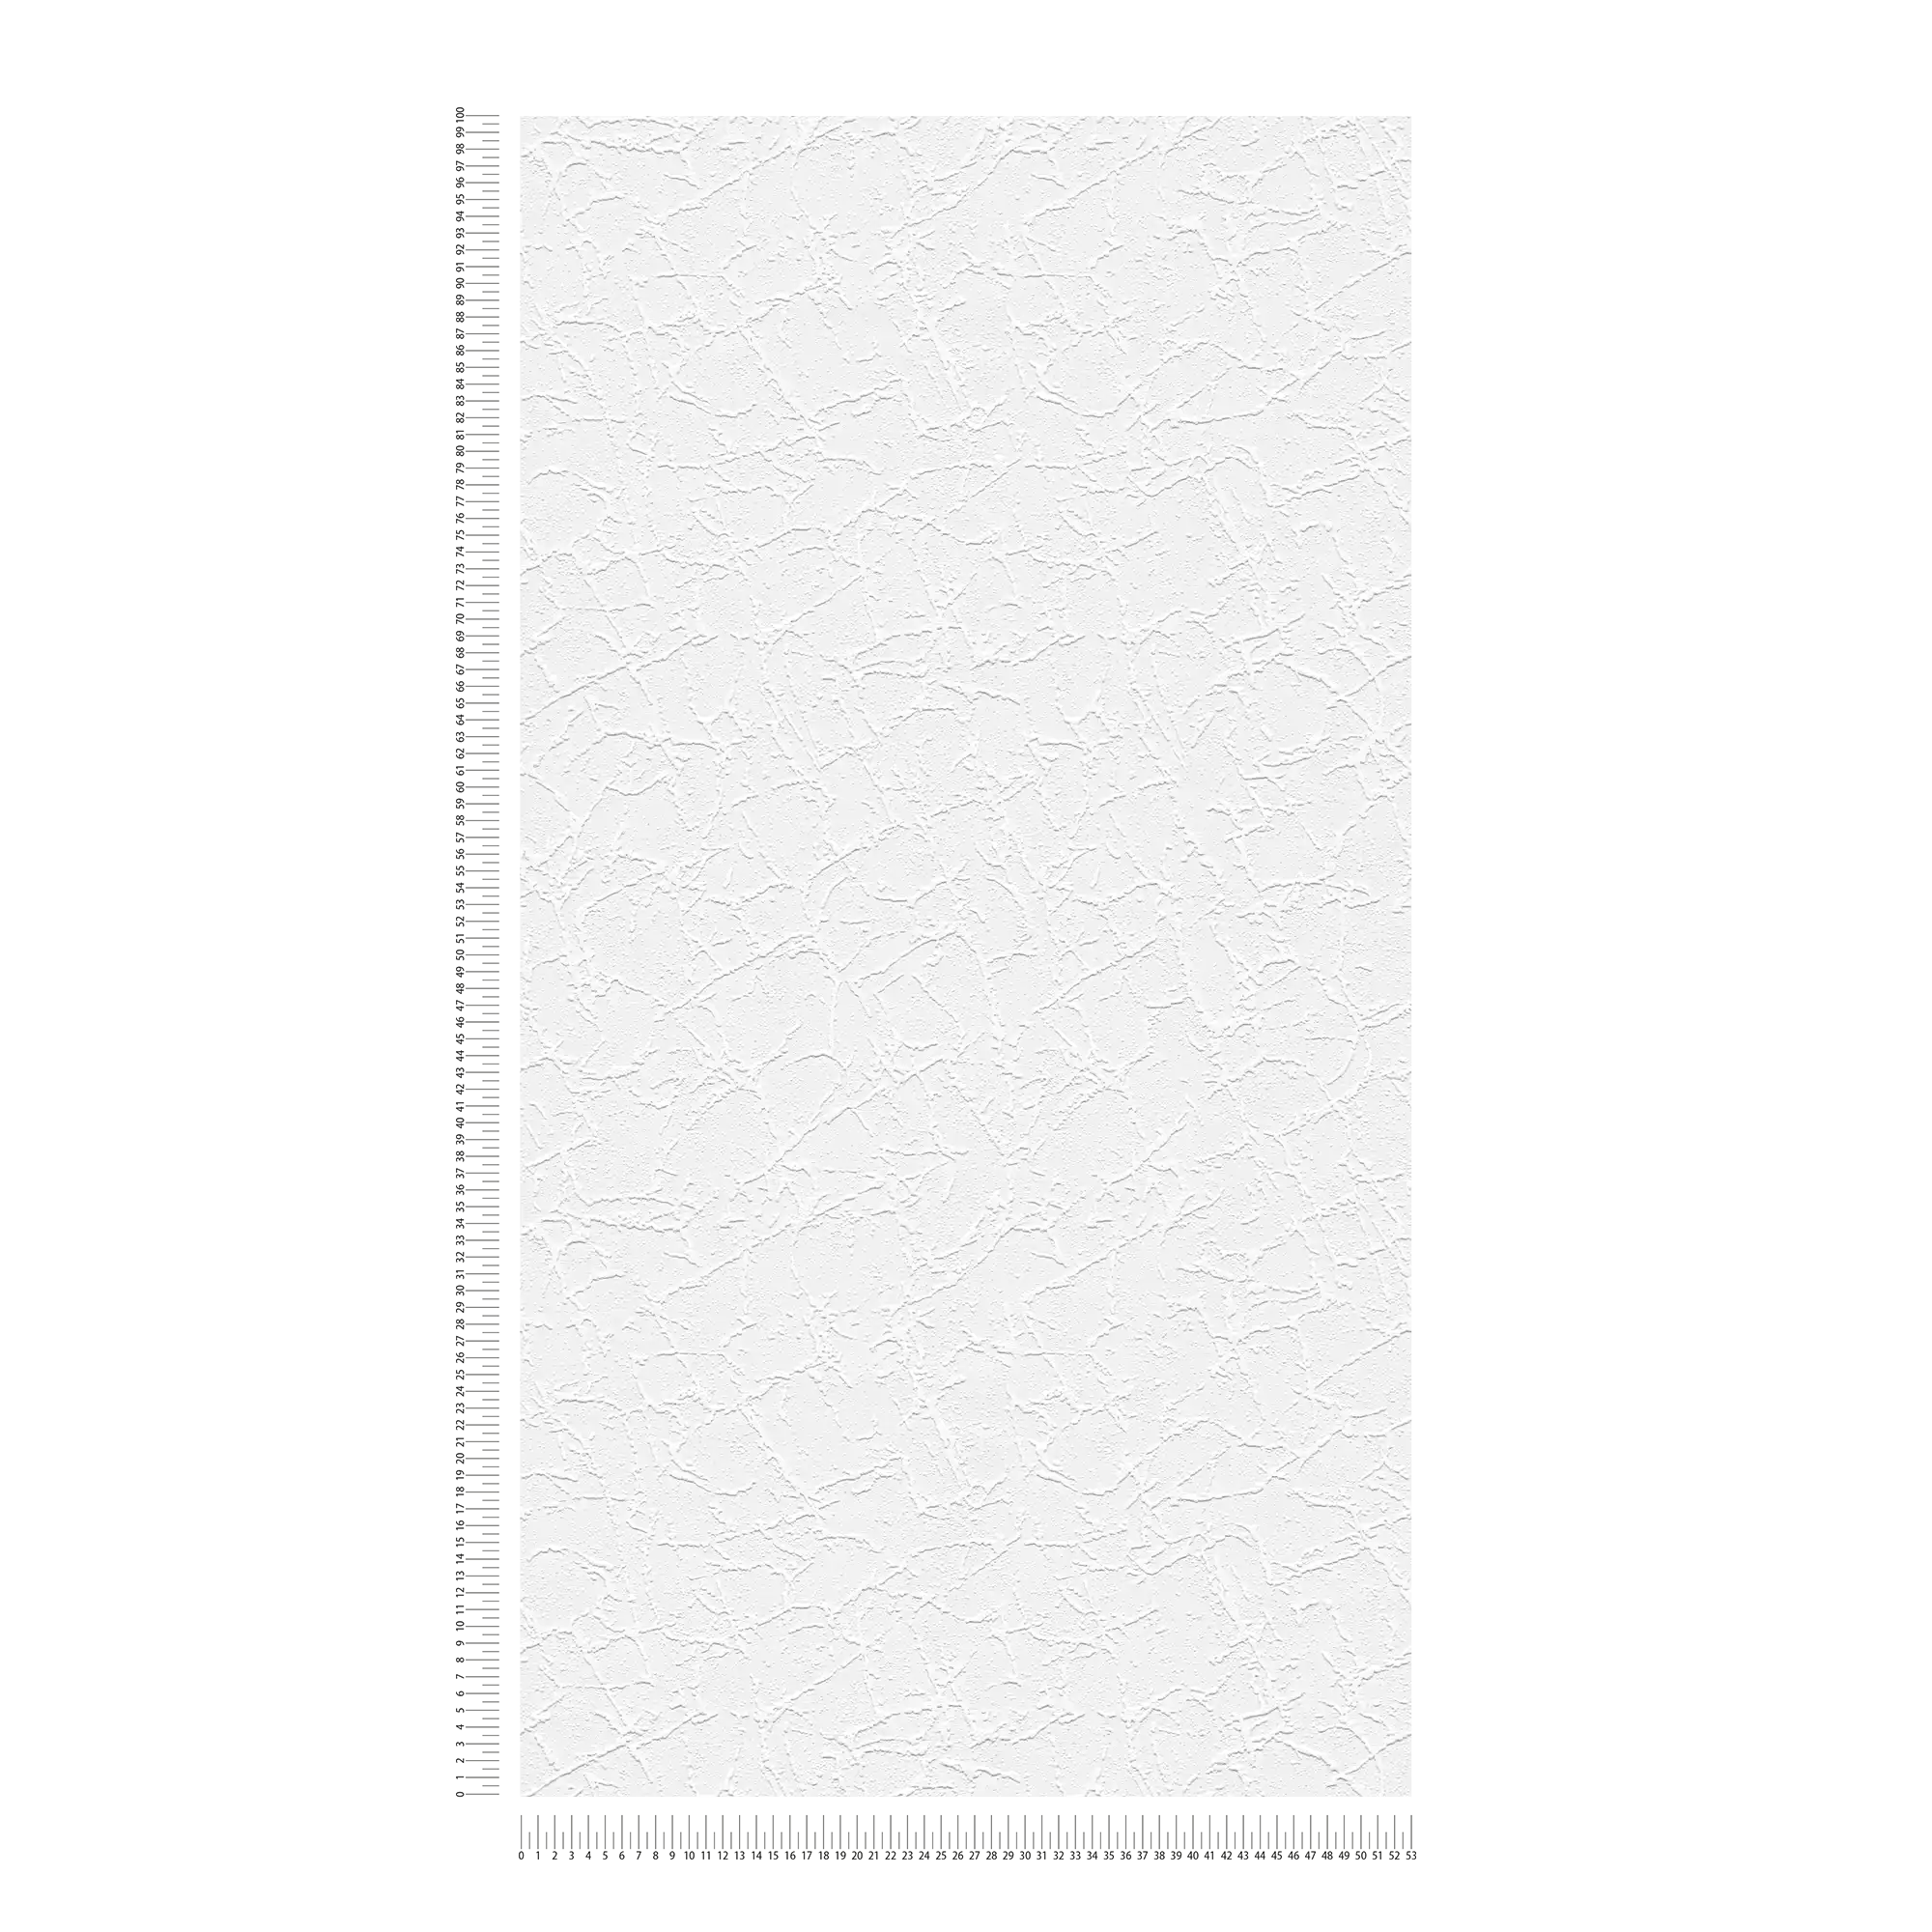             óptica de yeso llana de papel tapiz patrón de estructura de yeso - blanco
        